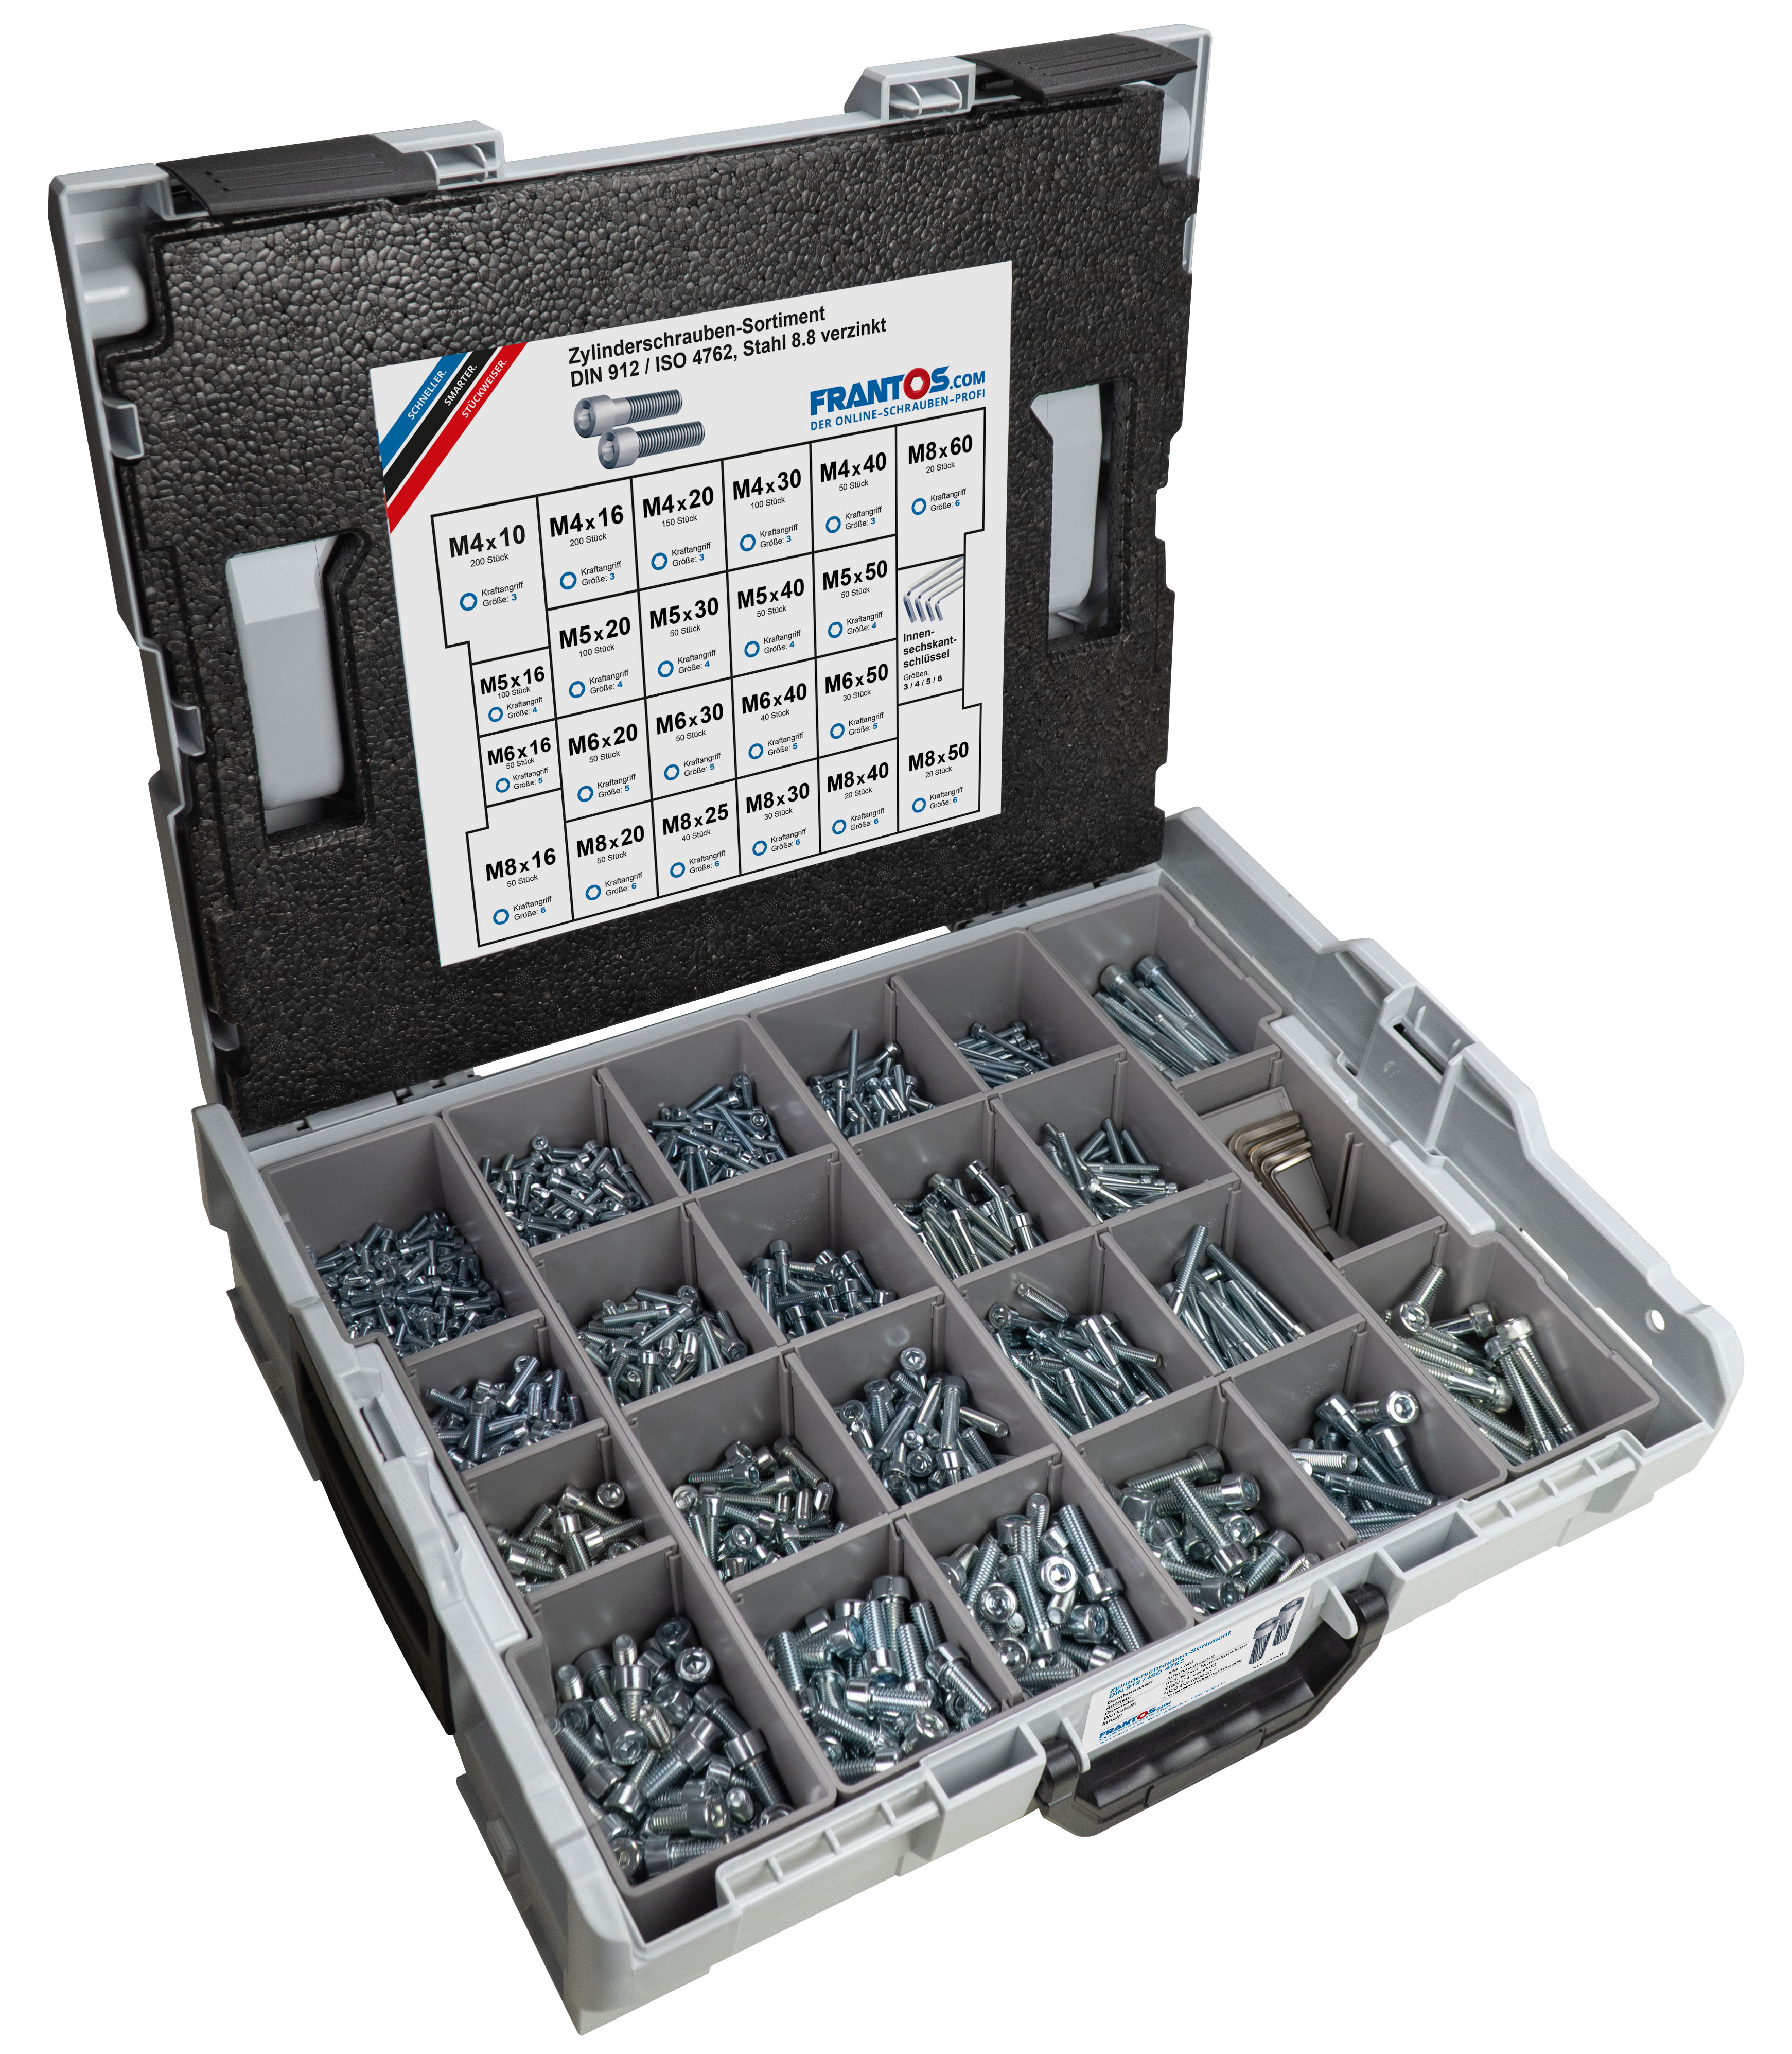 Frantos L-BOXX Sortiment, DIN 912 / ISO 4762 Zylinderschrauben, Stahl 8.8,  verzinkt, inkl. Inbusschlüssel, 1504 Teile